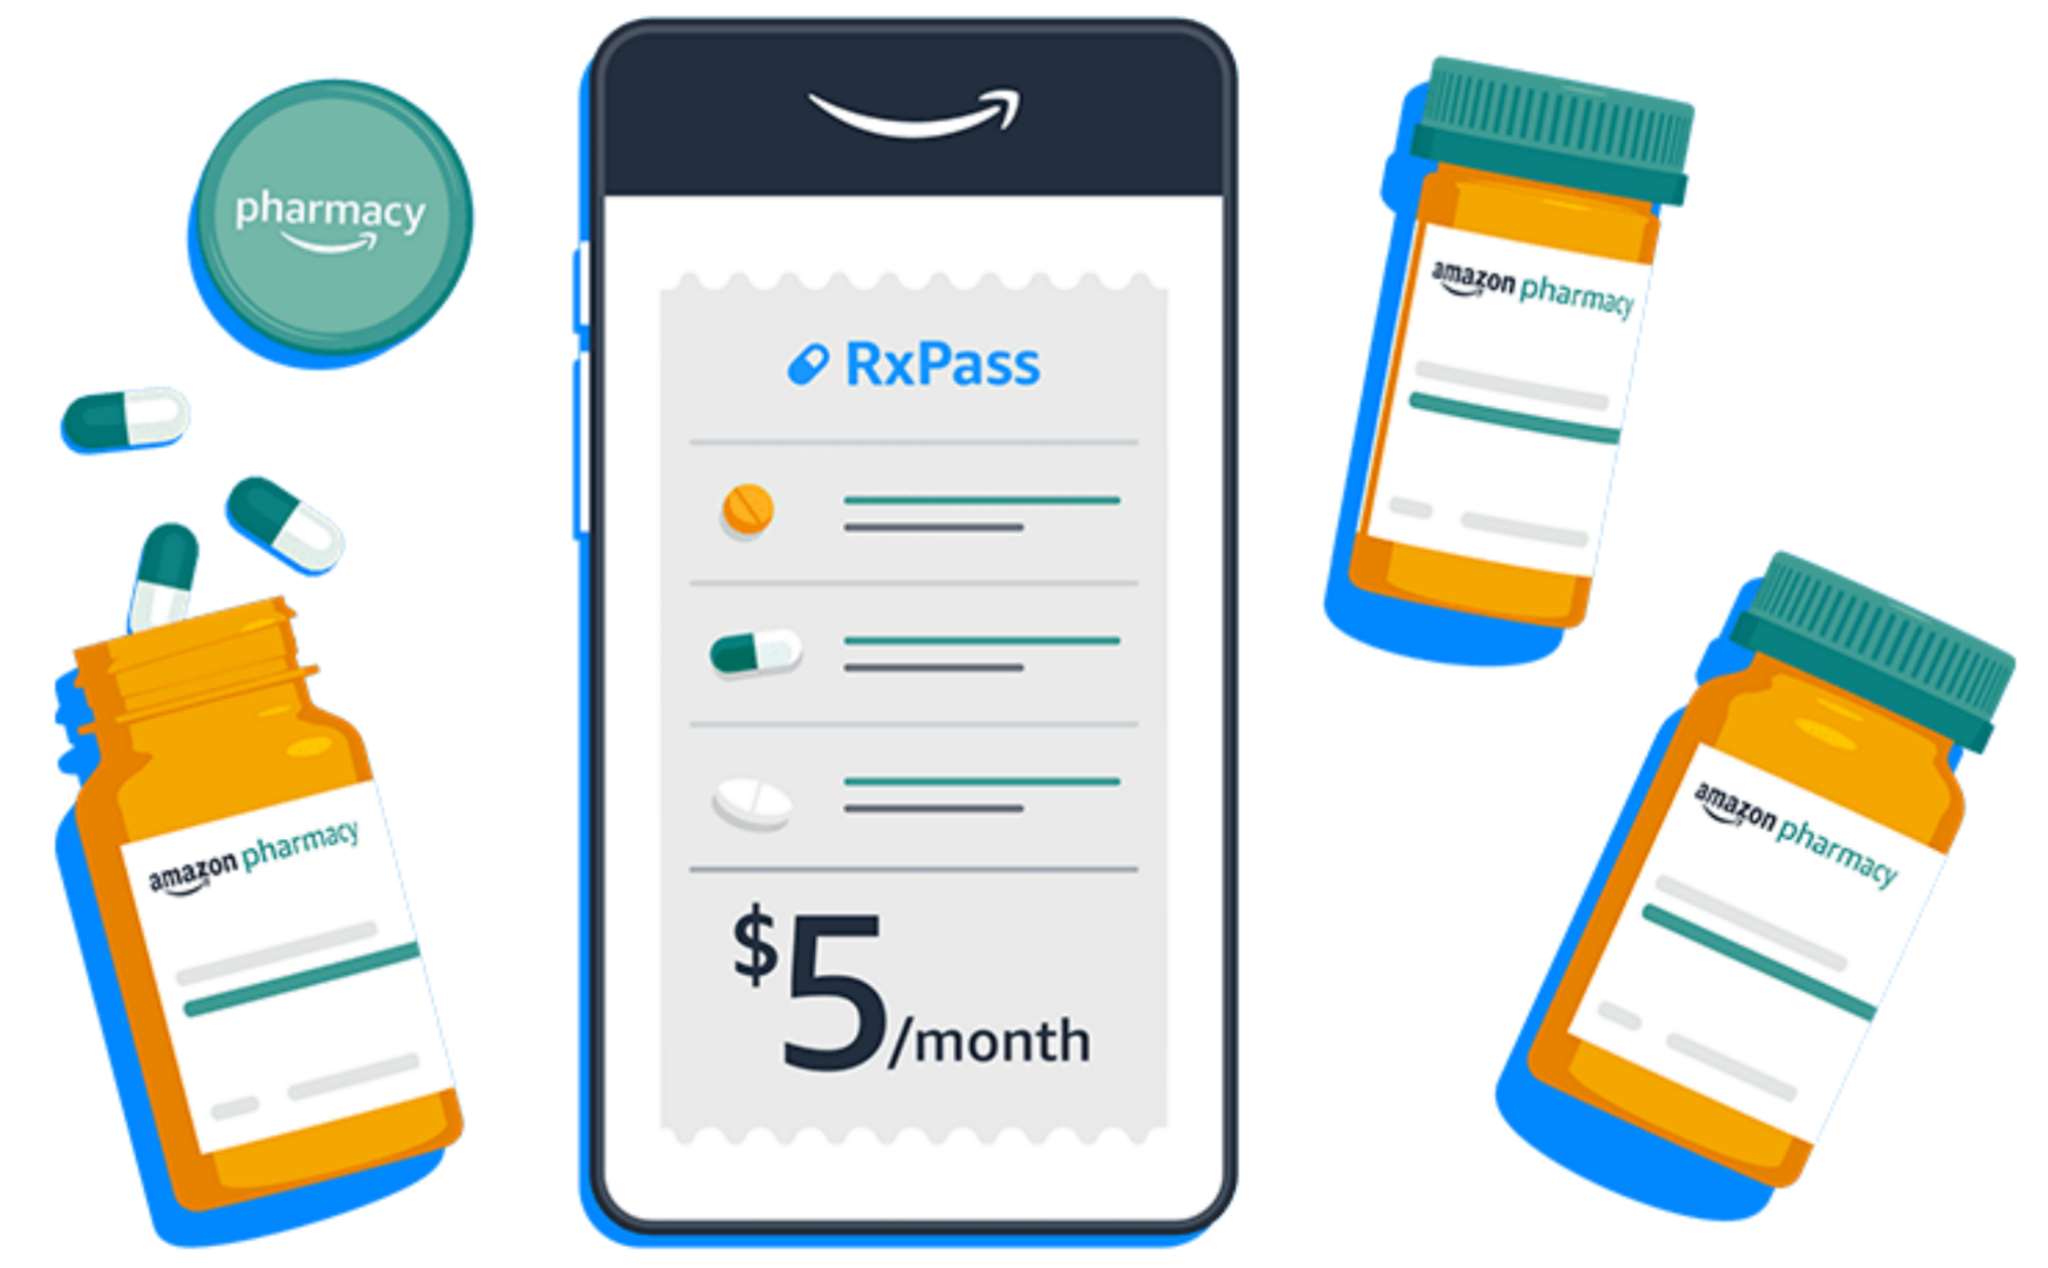 Amazon chính thức tiến vào lĩnh vực chăm sóc sức khoẻ với RxPass dành cho thành viên Prime